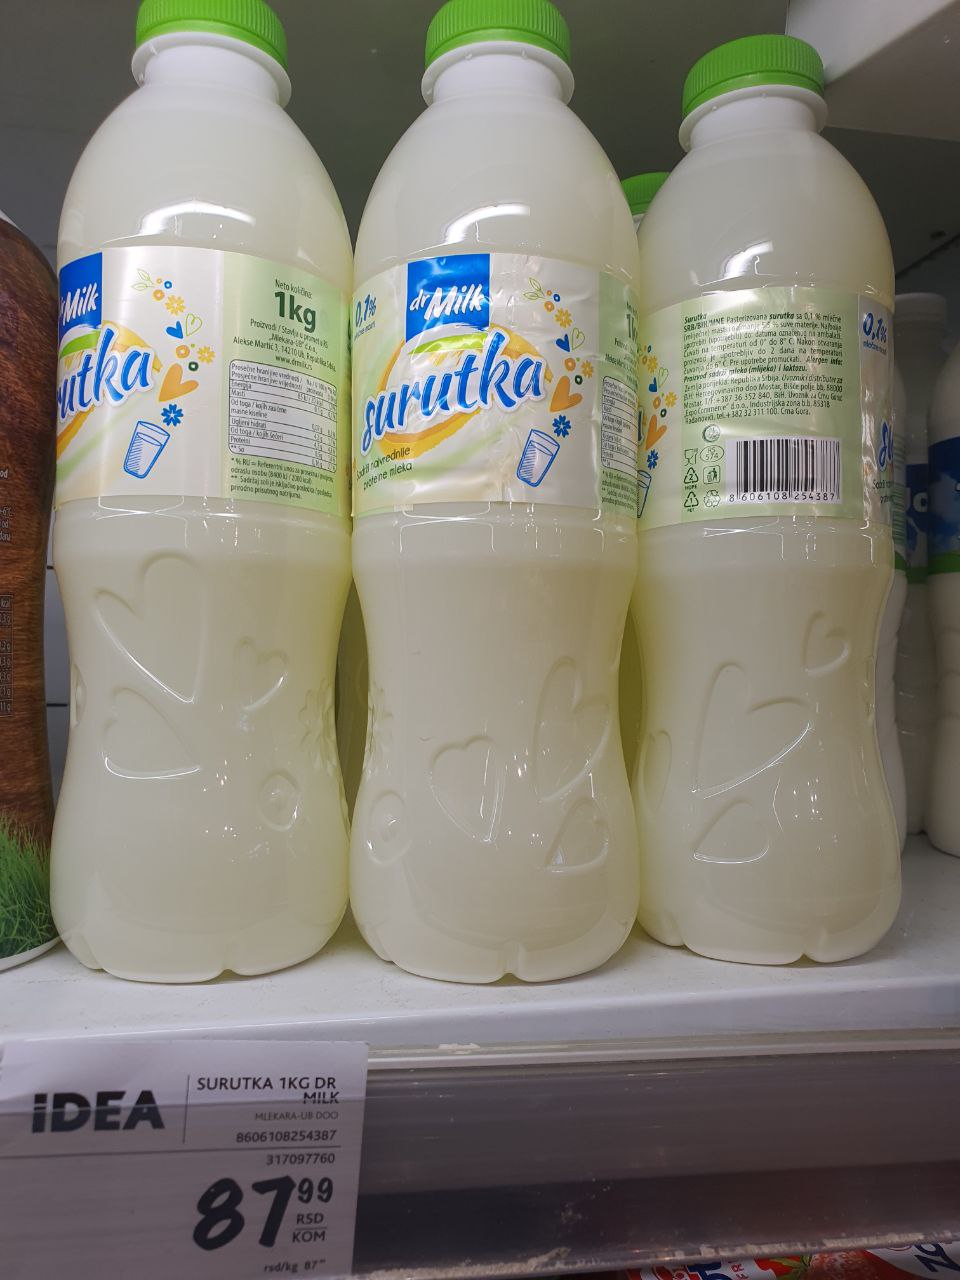 Молочные продукты - что любят в Сербии